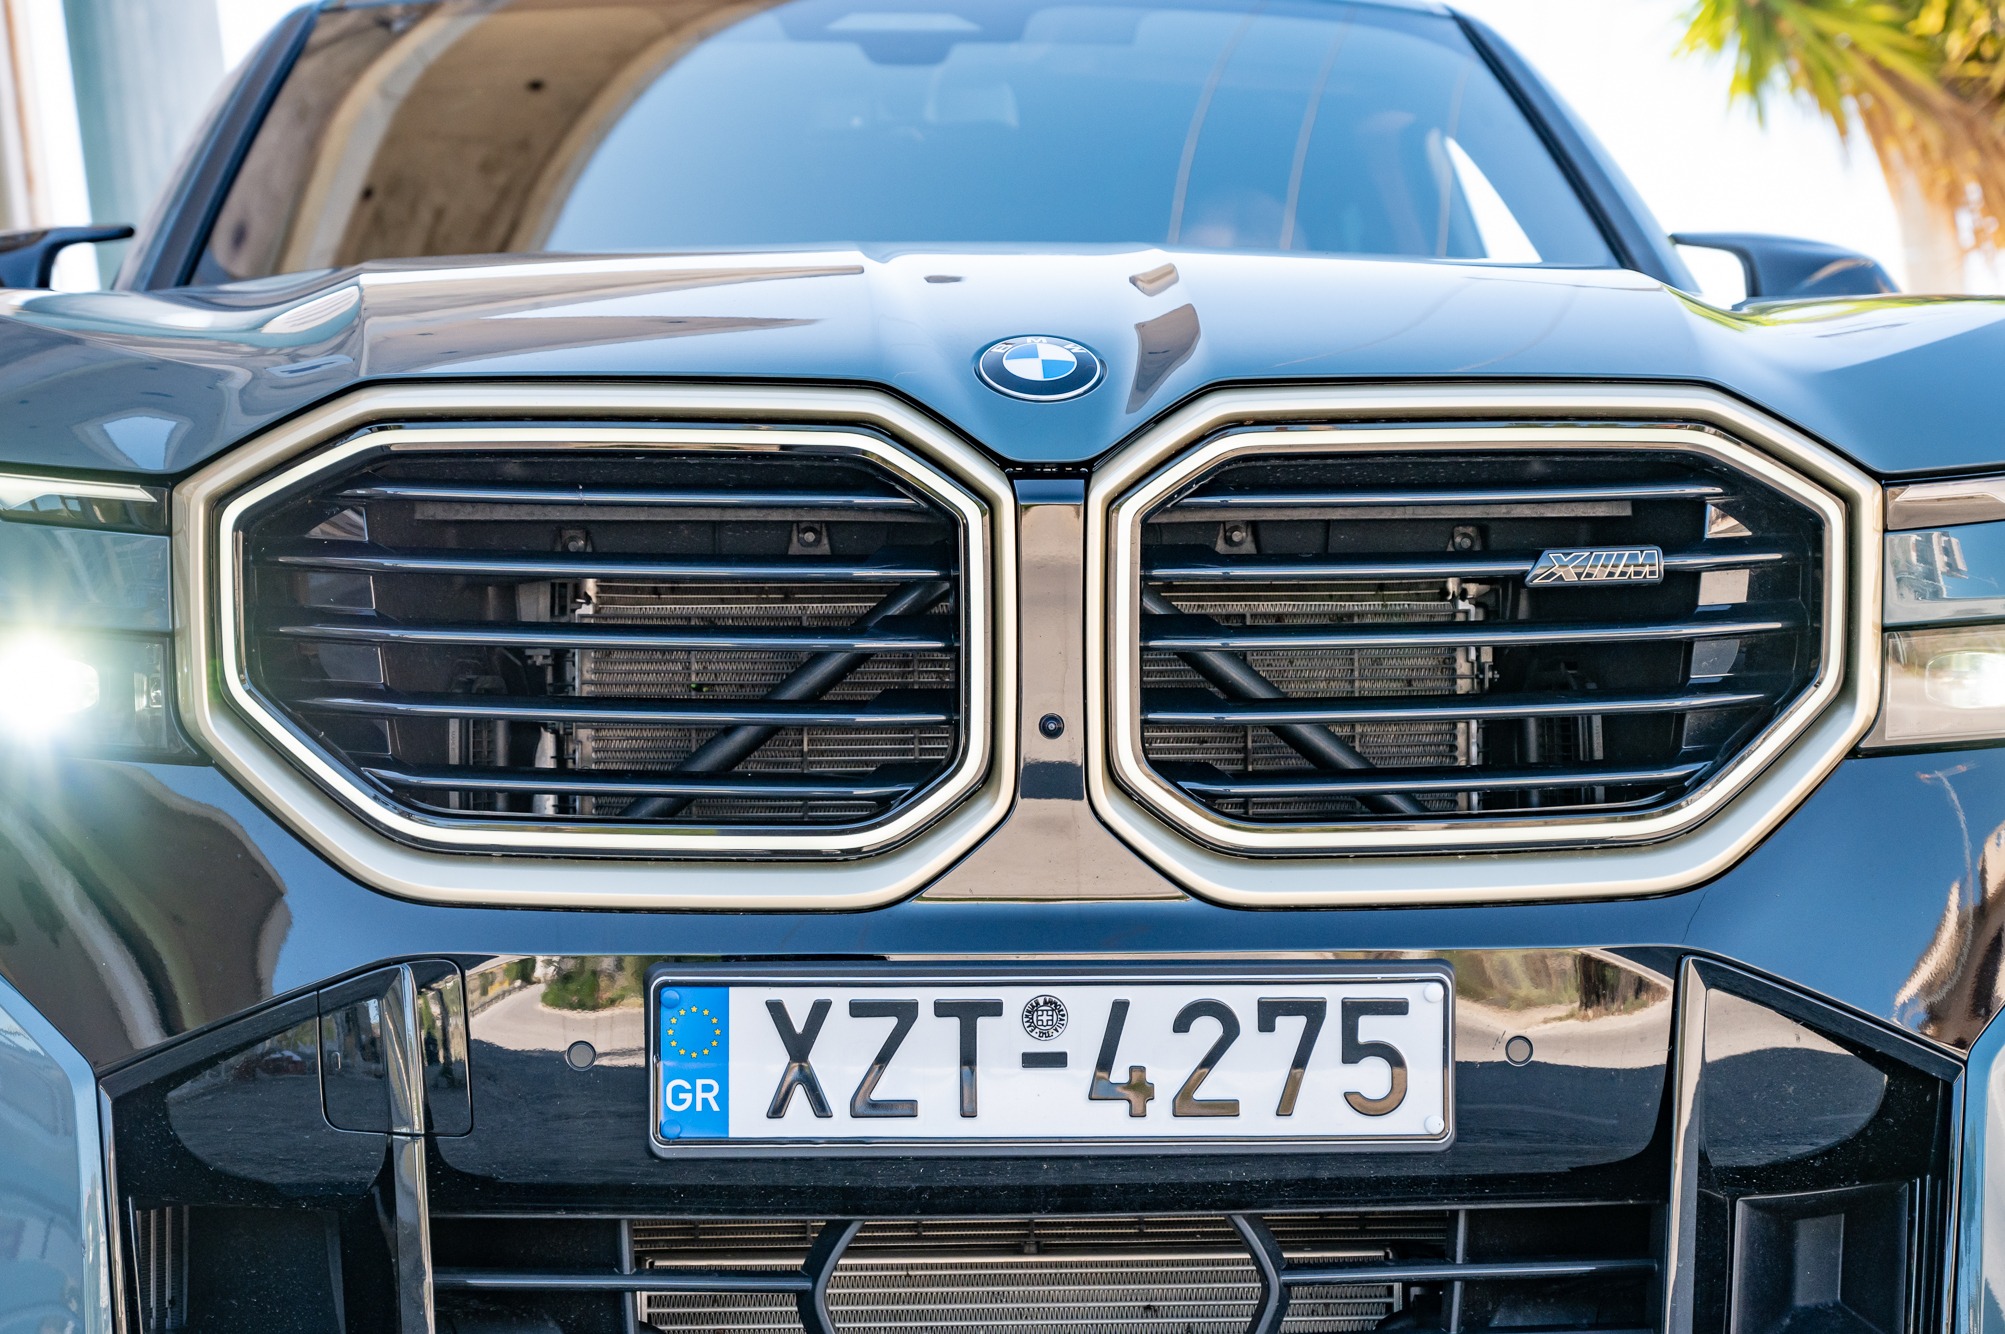 Test: BMW XM 653Ps